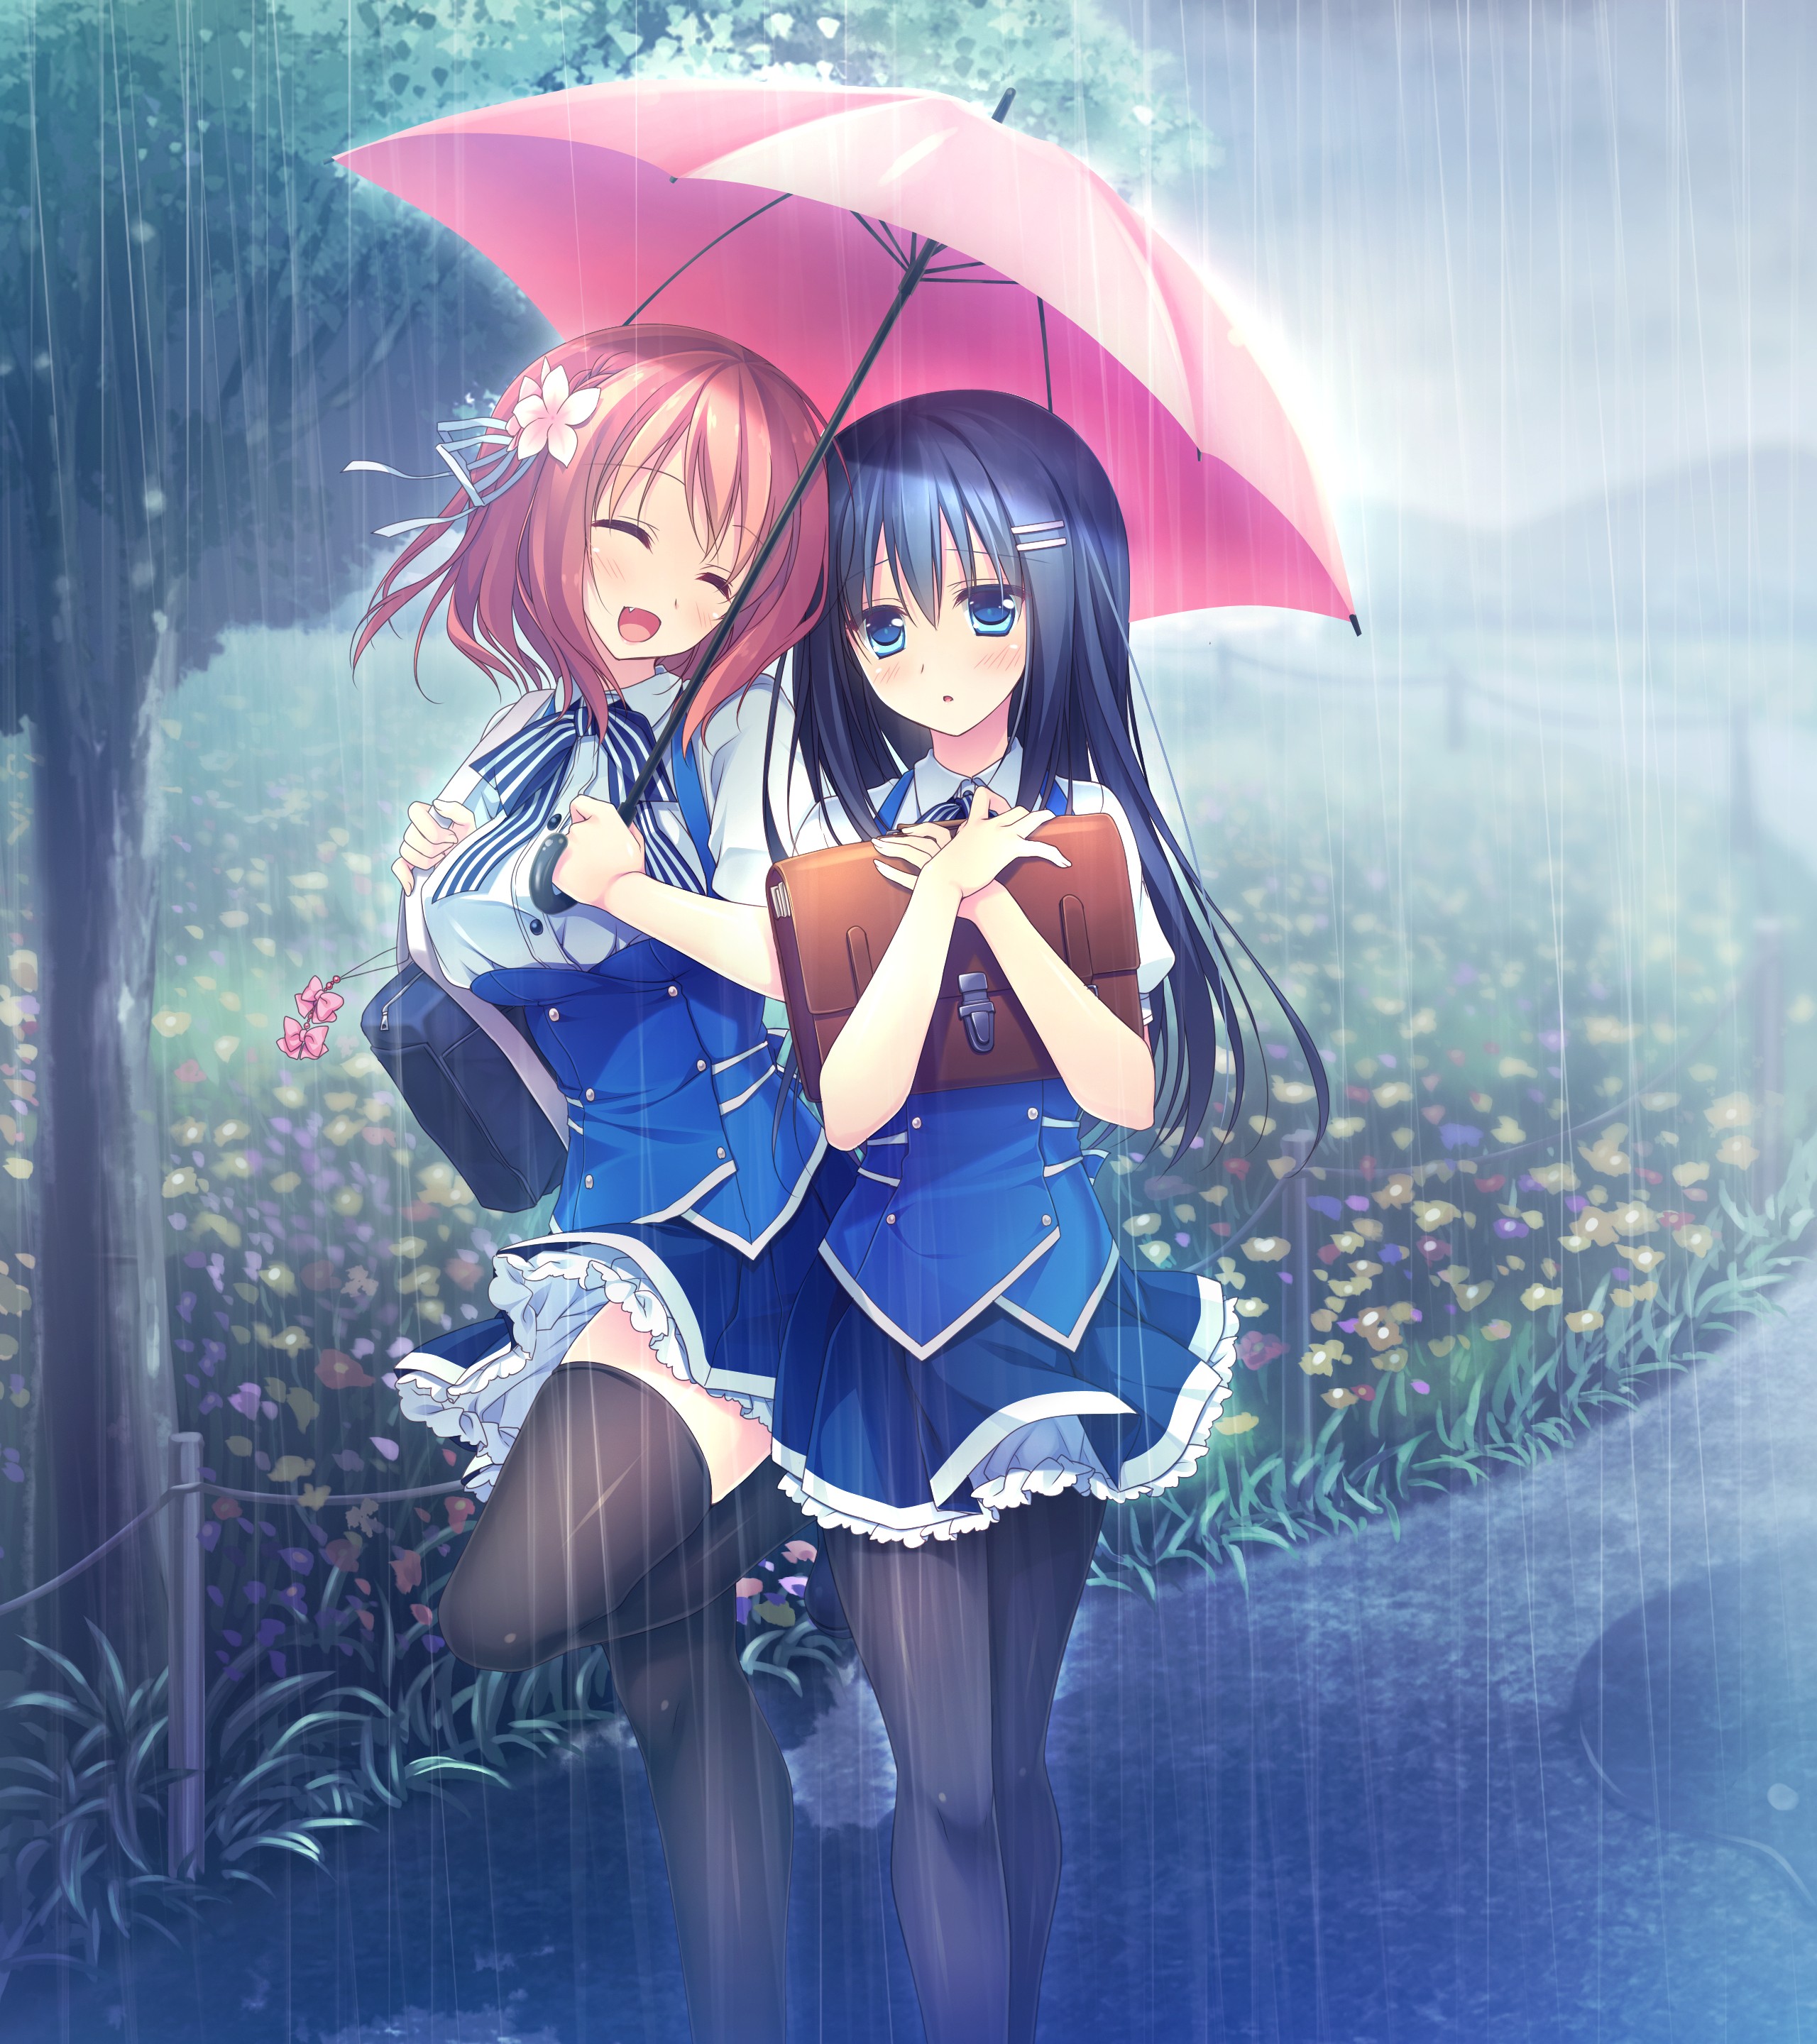 Anime 2560x2880 Kimi no Tonari de Koishiteru! Hoshino Nagisa Komatsu Rina rain flowers trees school uniform thigh-highs umbrella anime girls anime two women women with umbrella